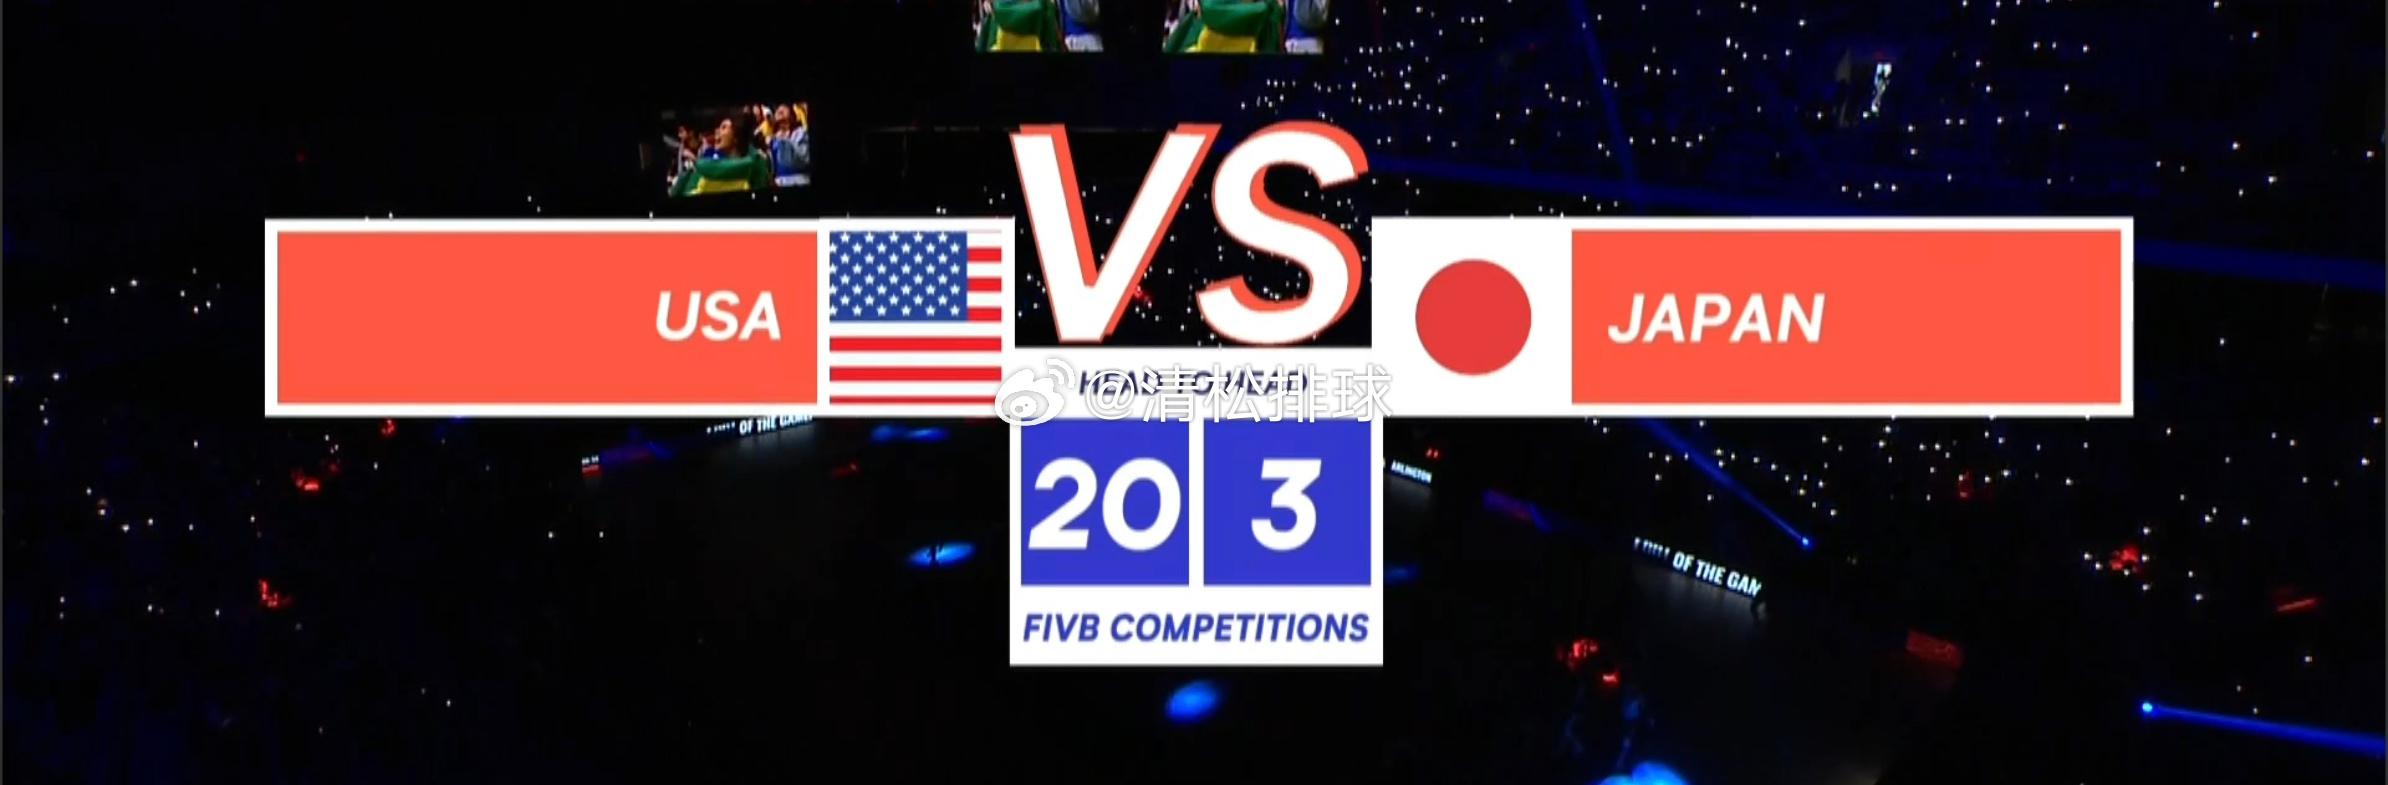 美国女排与日本女排FIVB赛事交手记录20-3#清松带你看排球# ​​​(1)